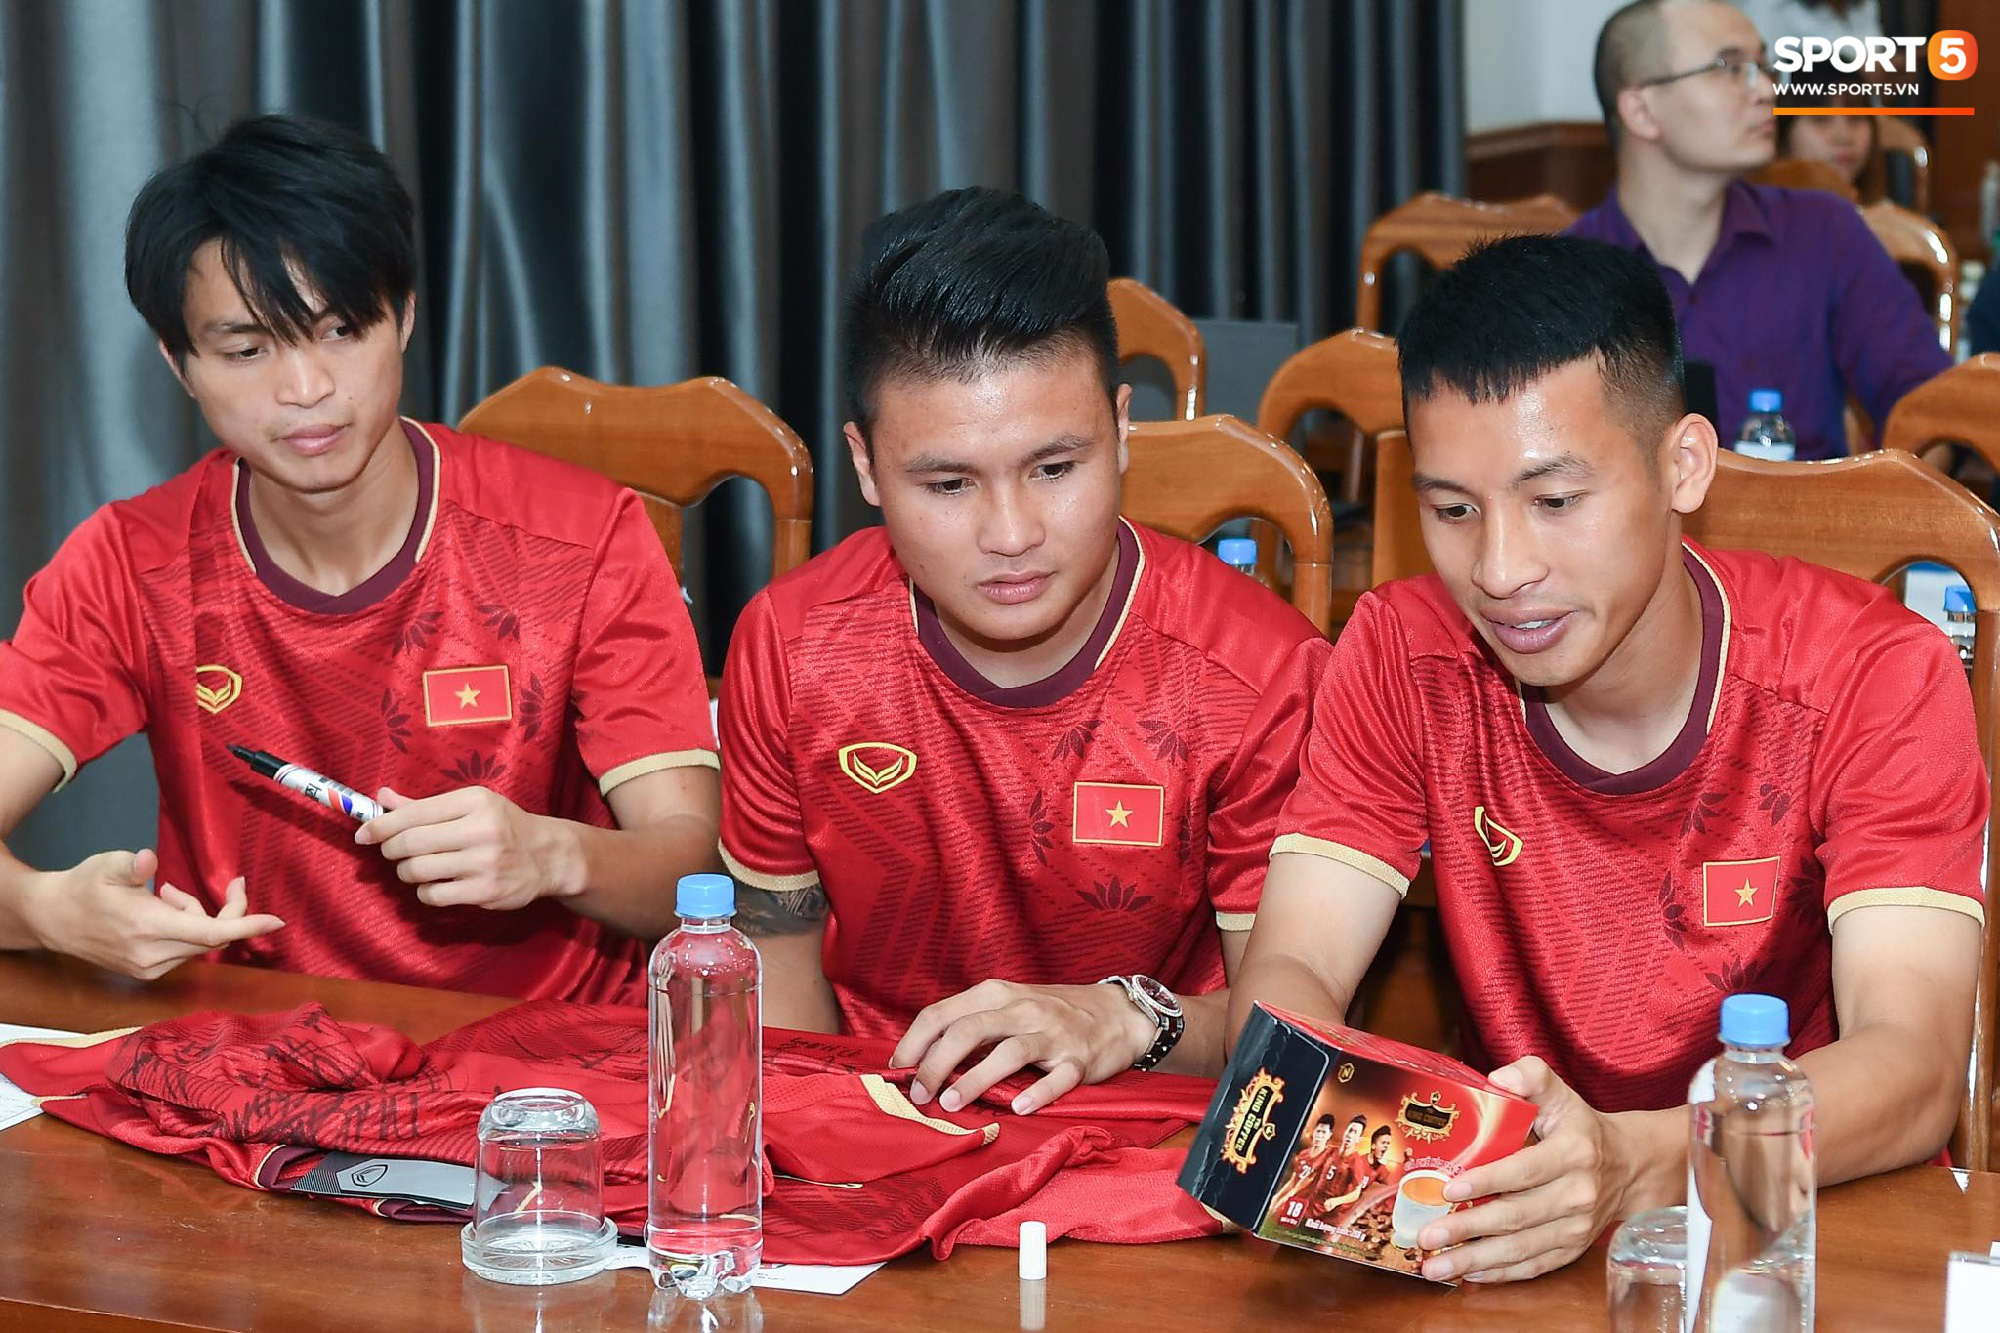 Tuấn Anh tán gẫu cực vui cùng các nữ tuyển thủ, Quang Hải gặp sự cố lạc đường hài hước trong phòng họp báo - Ảnh 1.